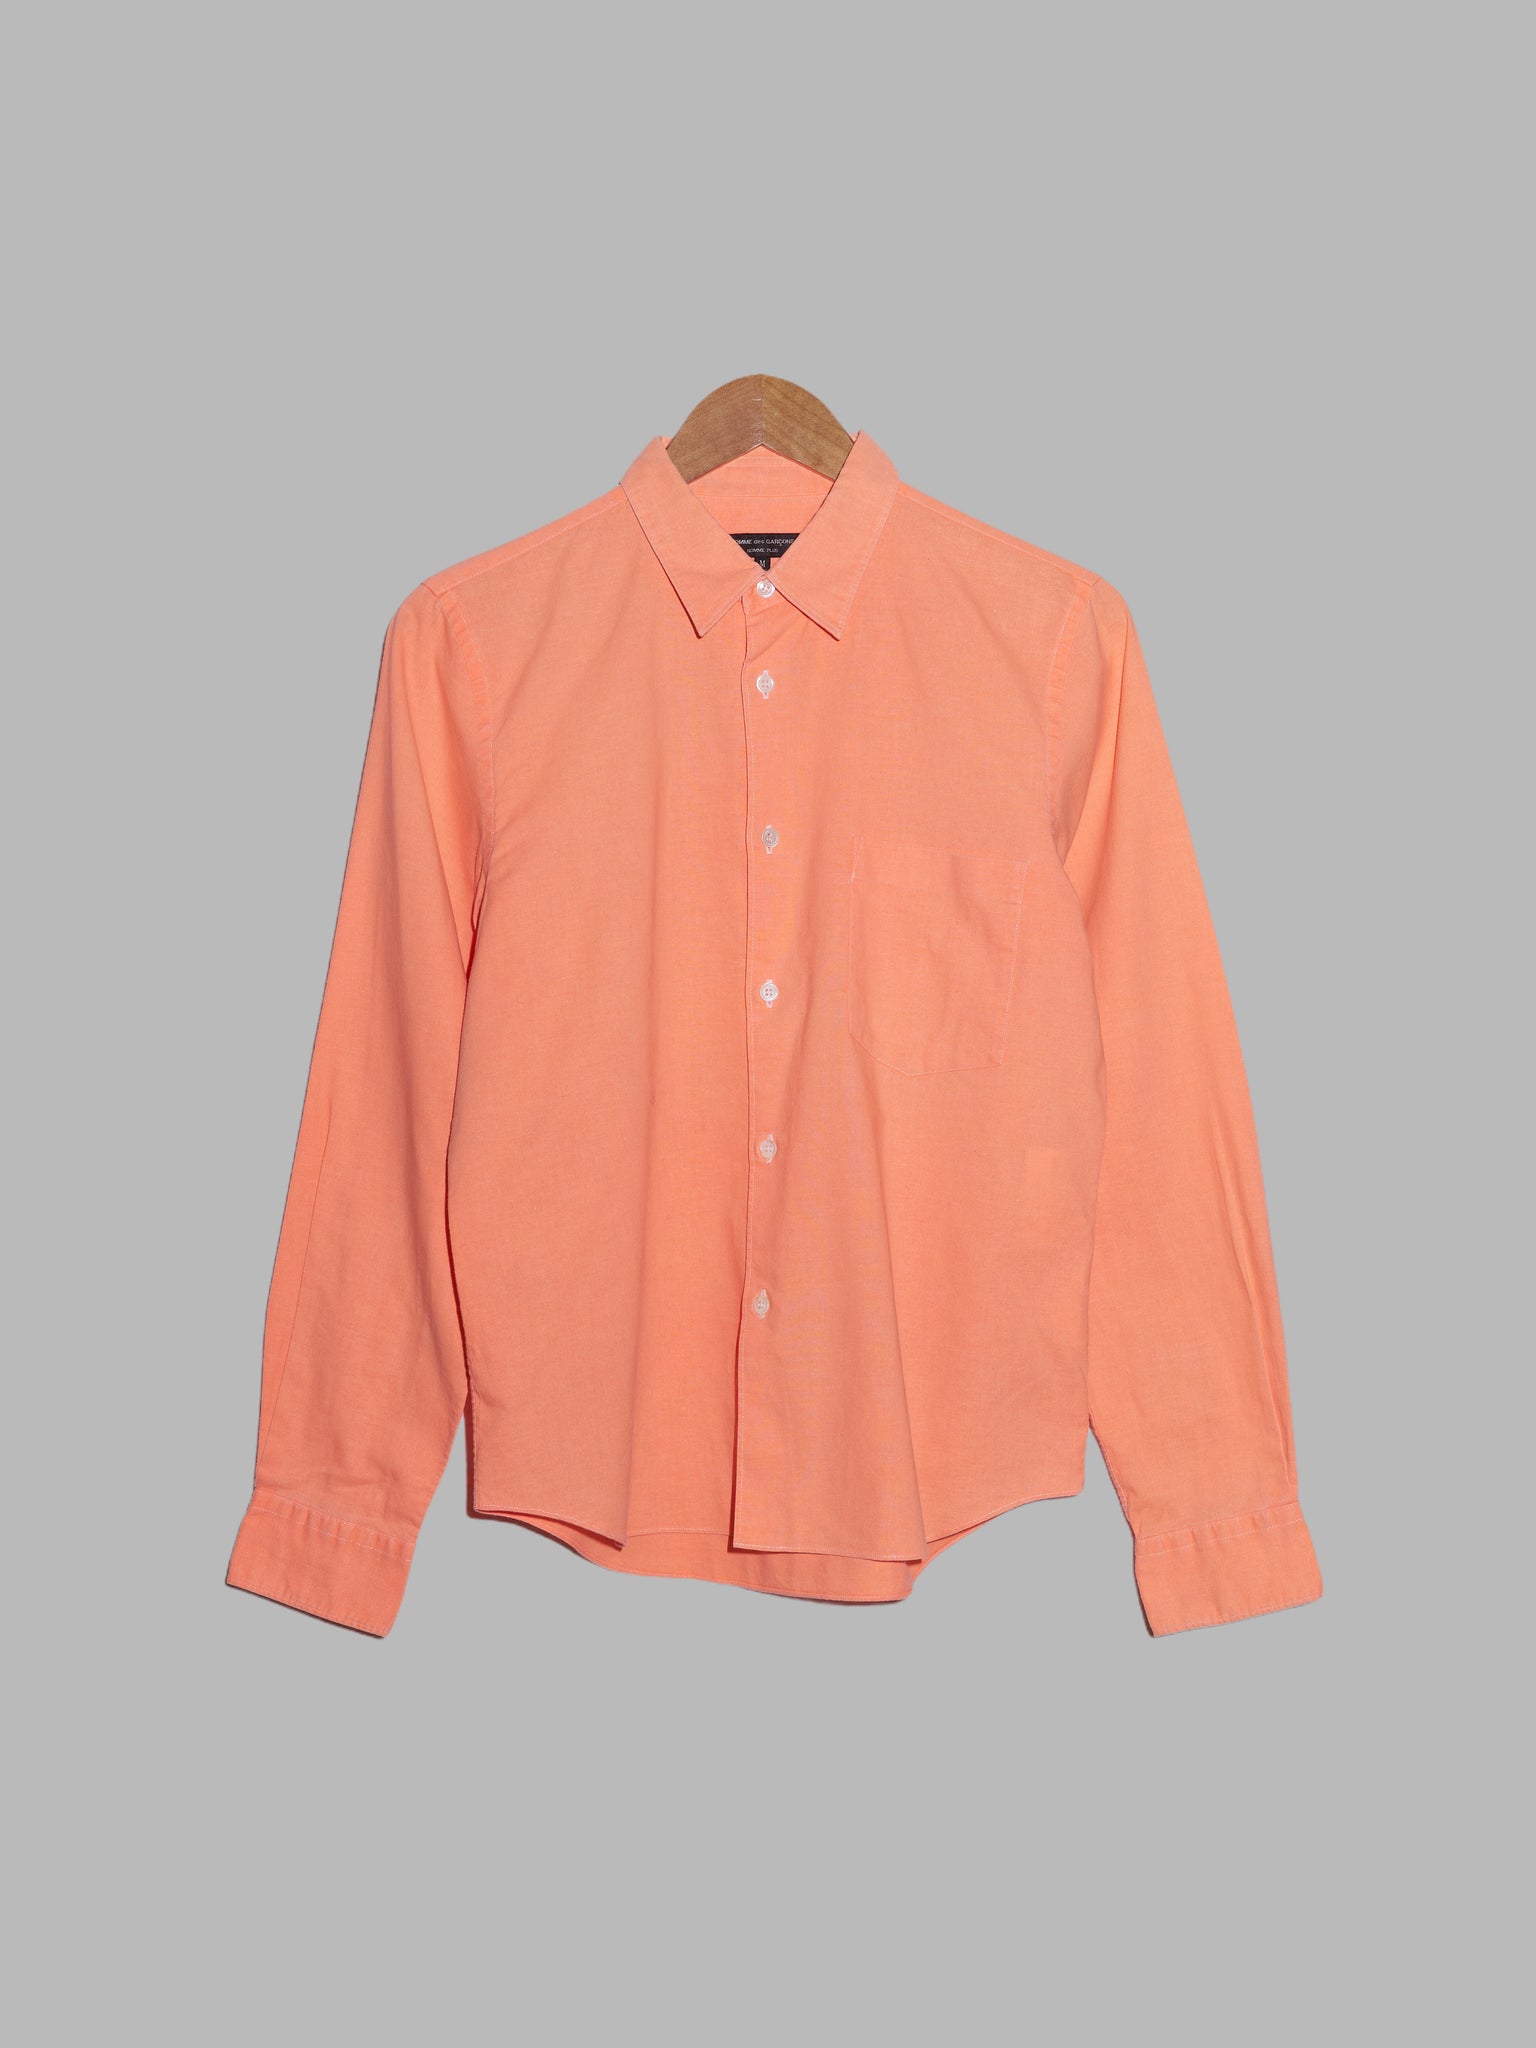 Comme des Garcons Homme Plus SS2002 fluorescent orange cotton shirt - M S XS